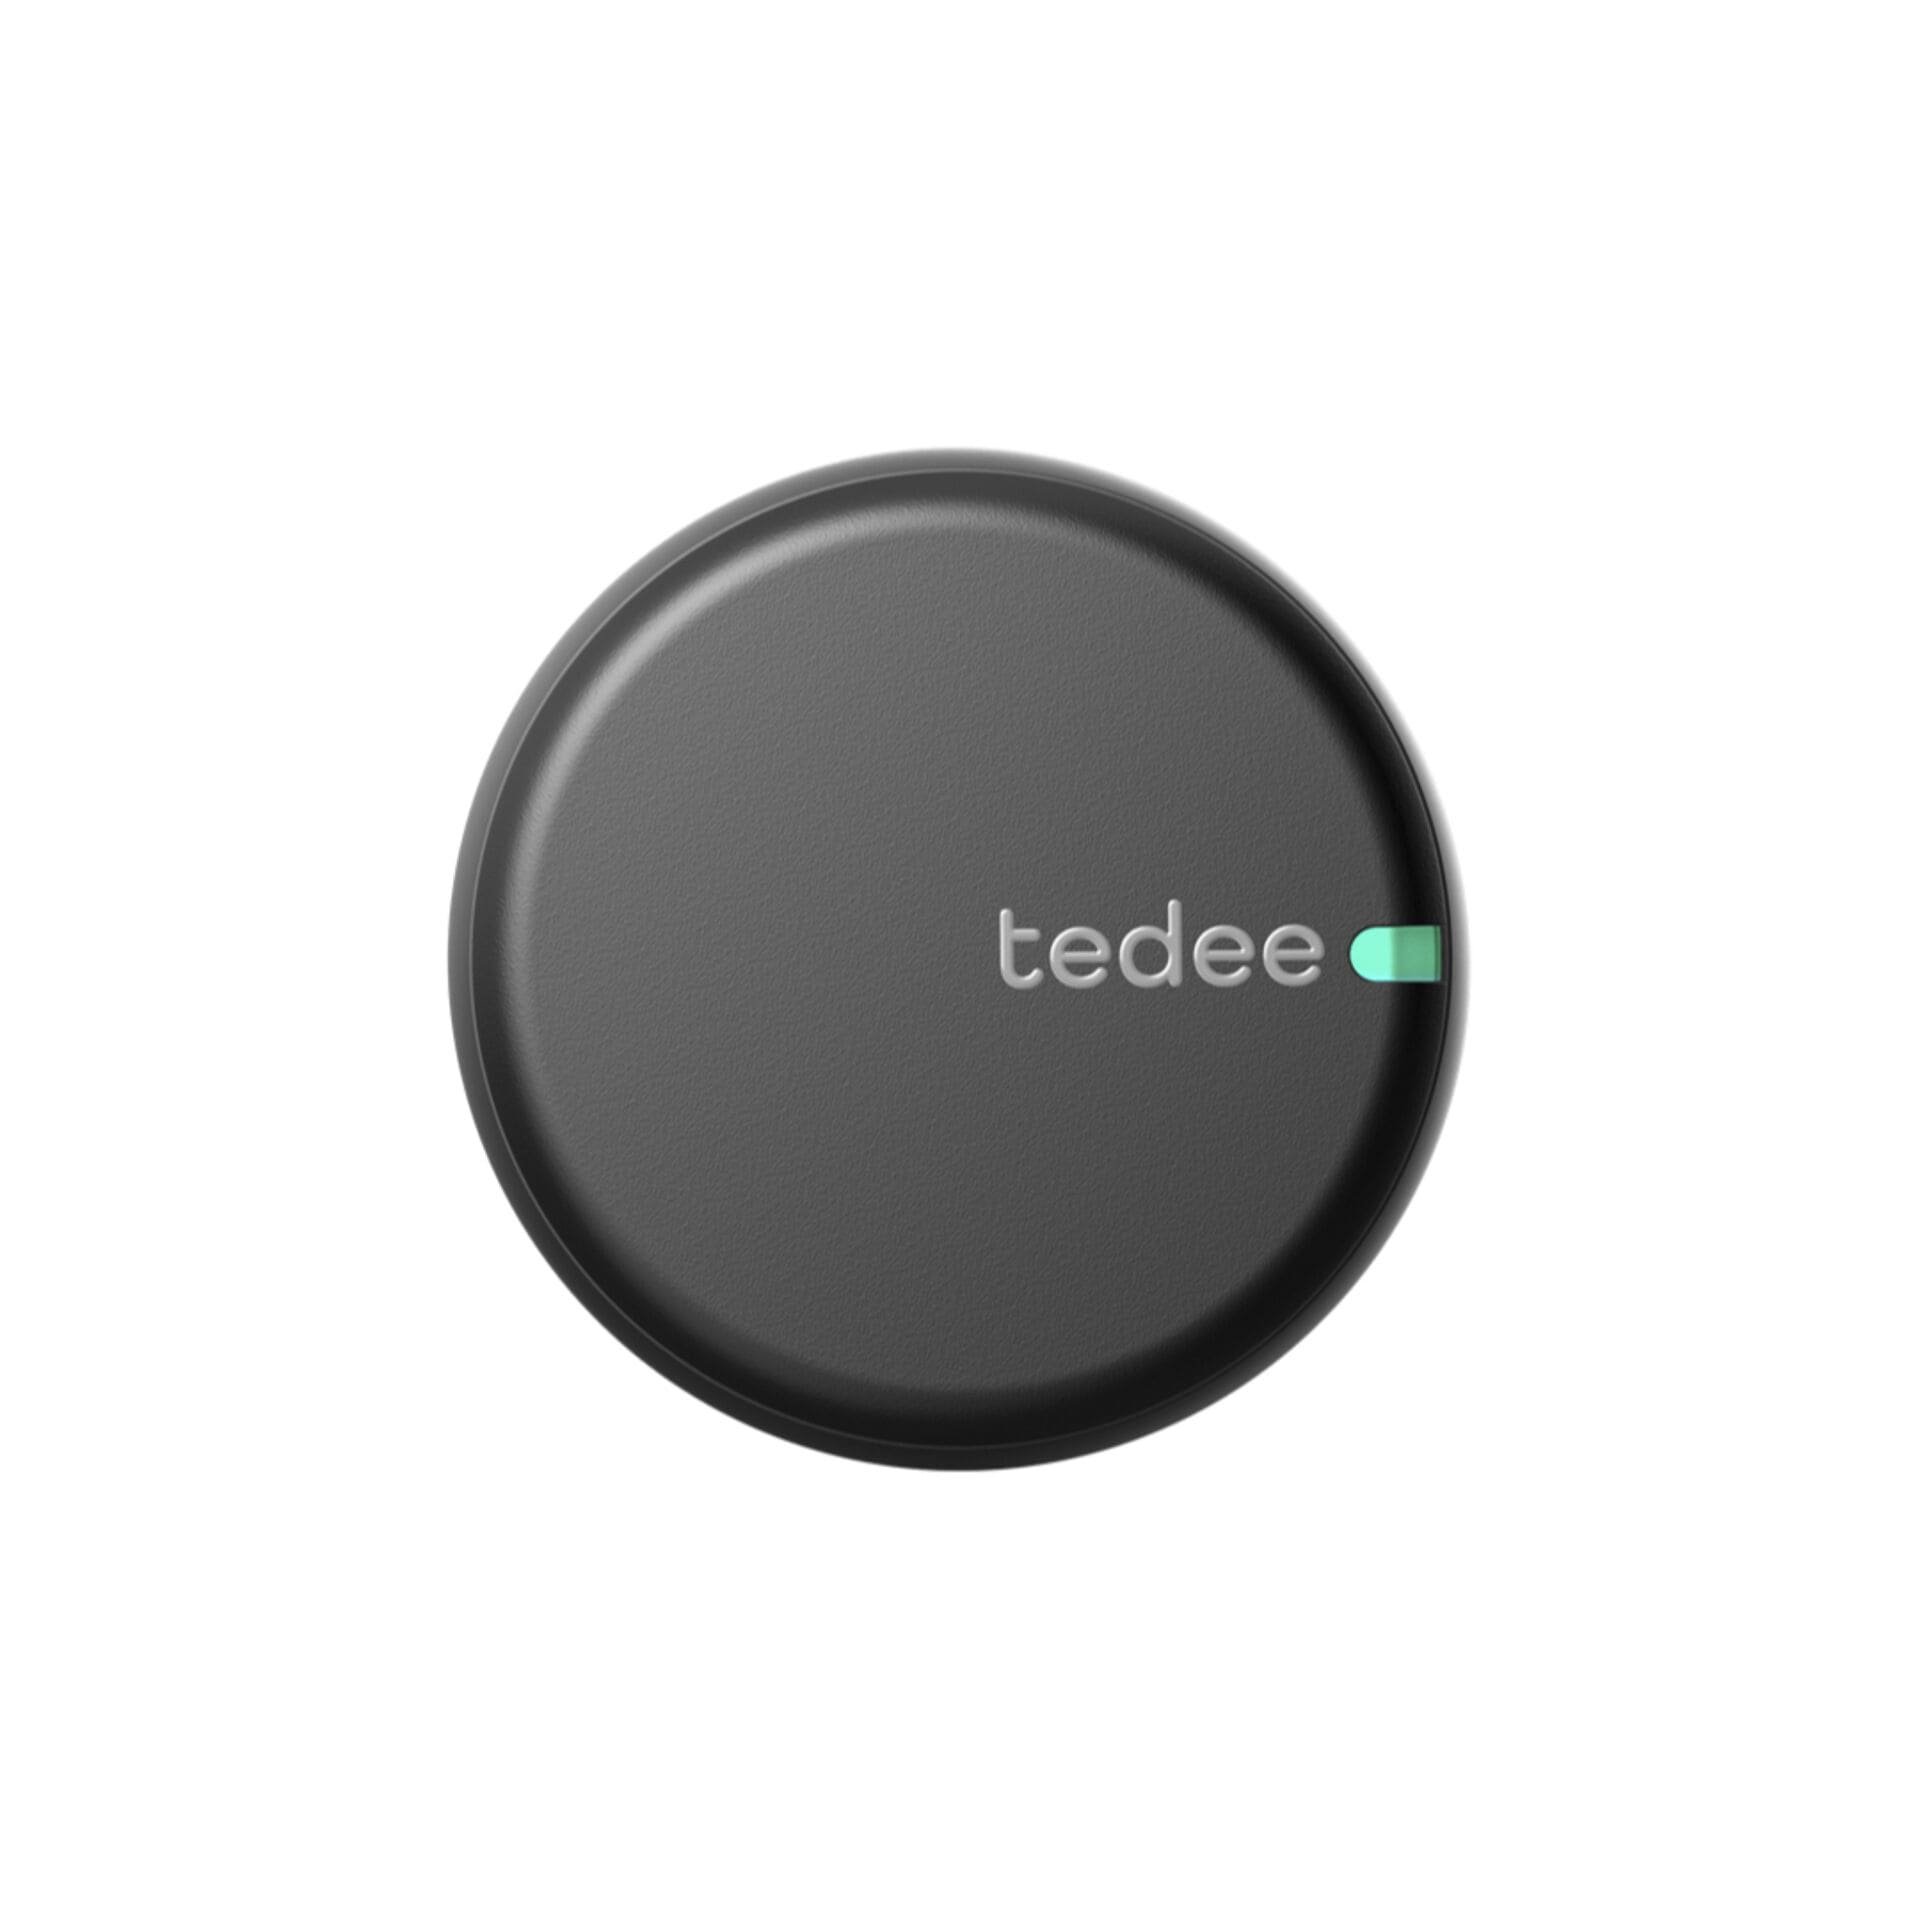 tedee – Adapter for European Doors, Black